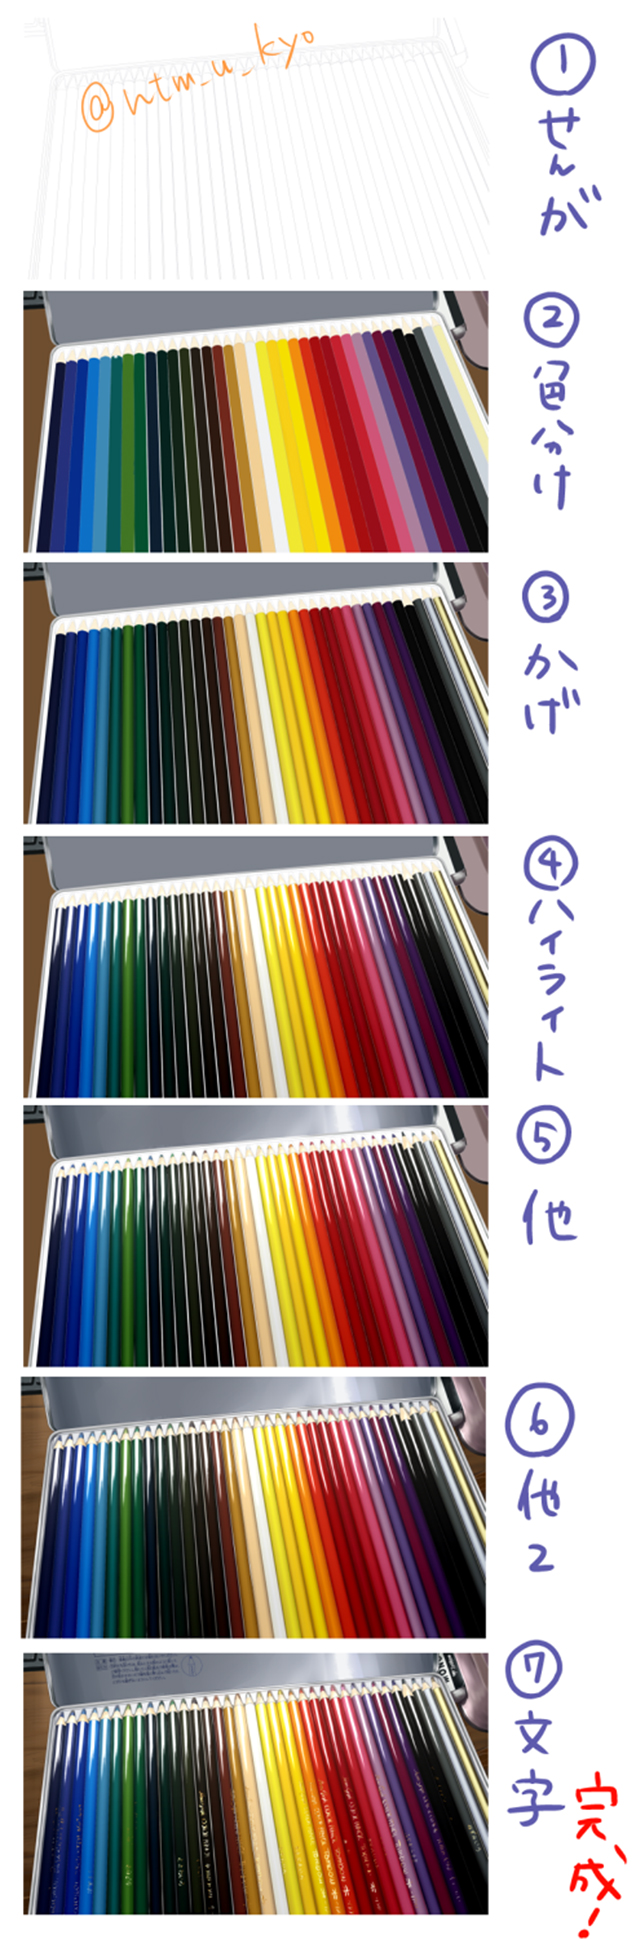 colorpencils2.jpg